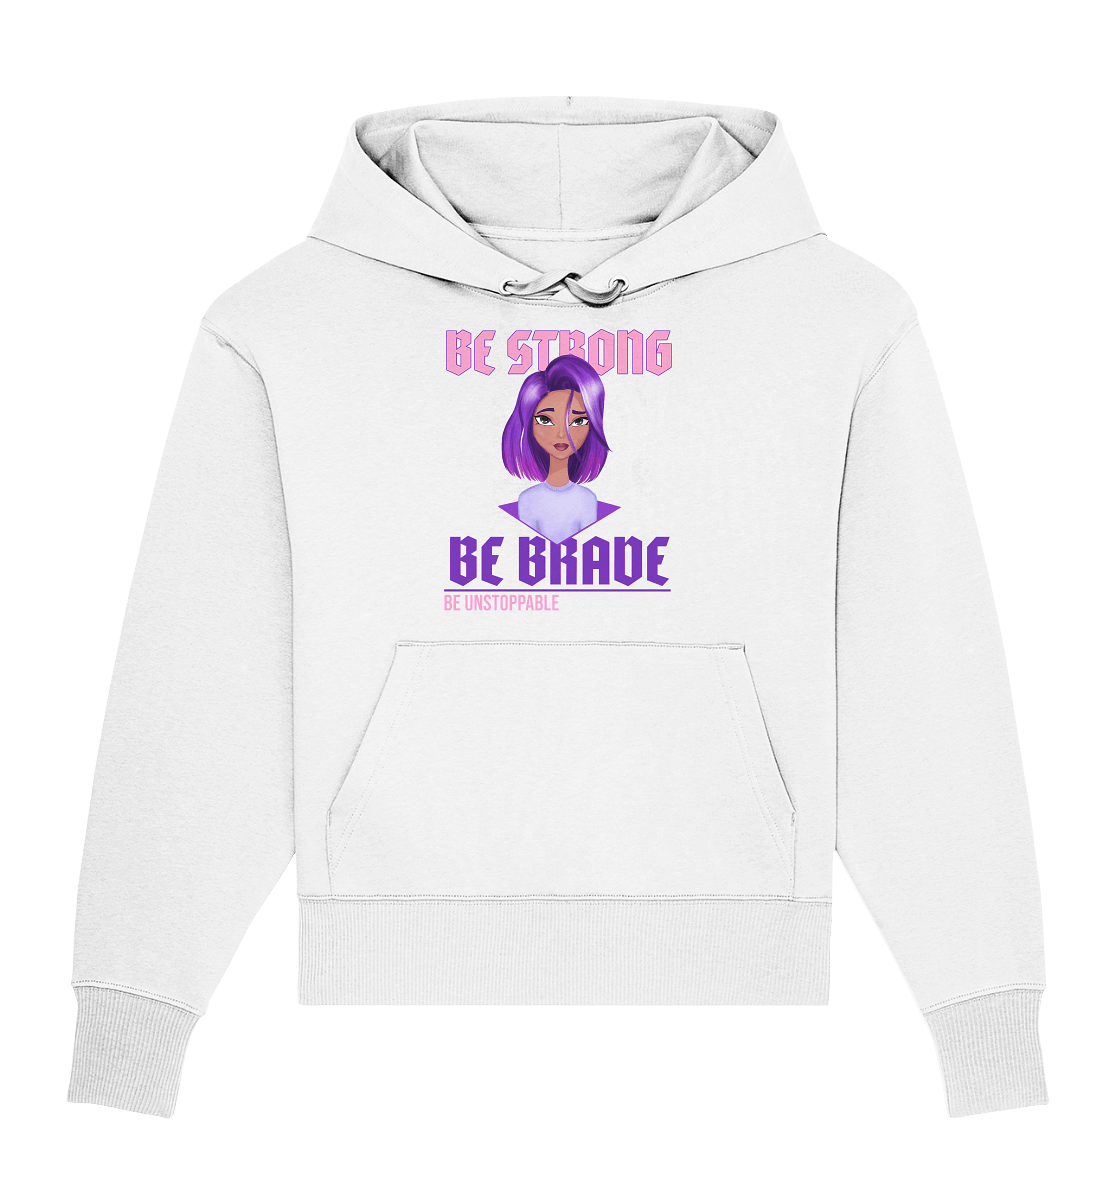 Damen Oversize Kapuzenpullover in weiß mit handgezeichneten Cartoon Girl mit lila-violett Ombré Haarfarbe und Beschriftung "be strong be brave be unstoppable" 